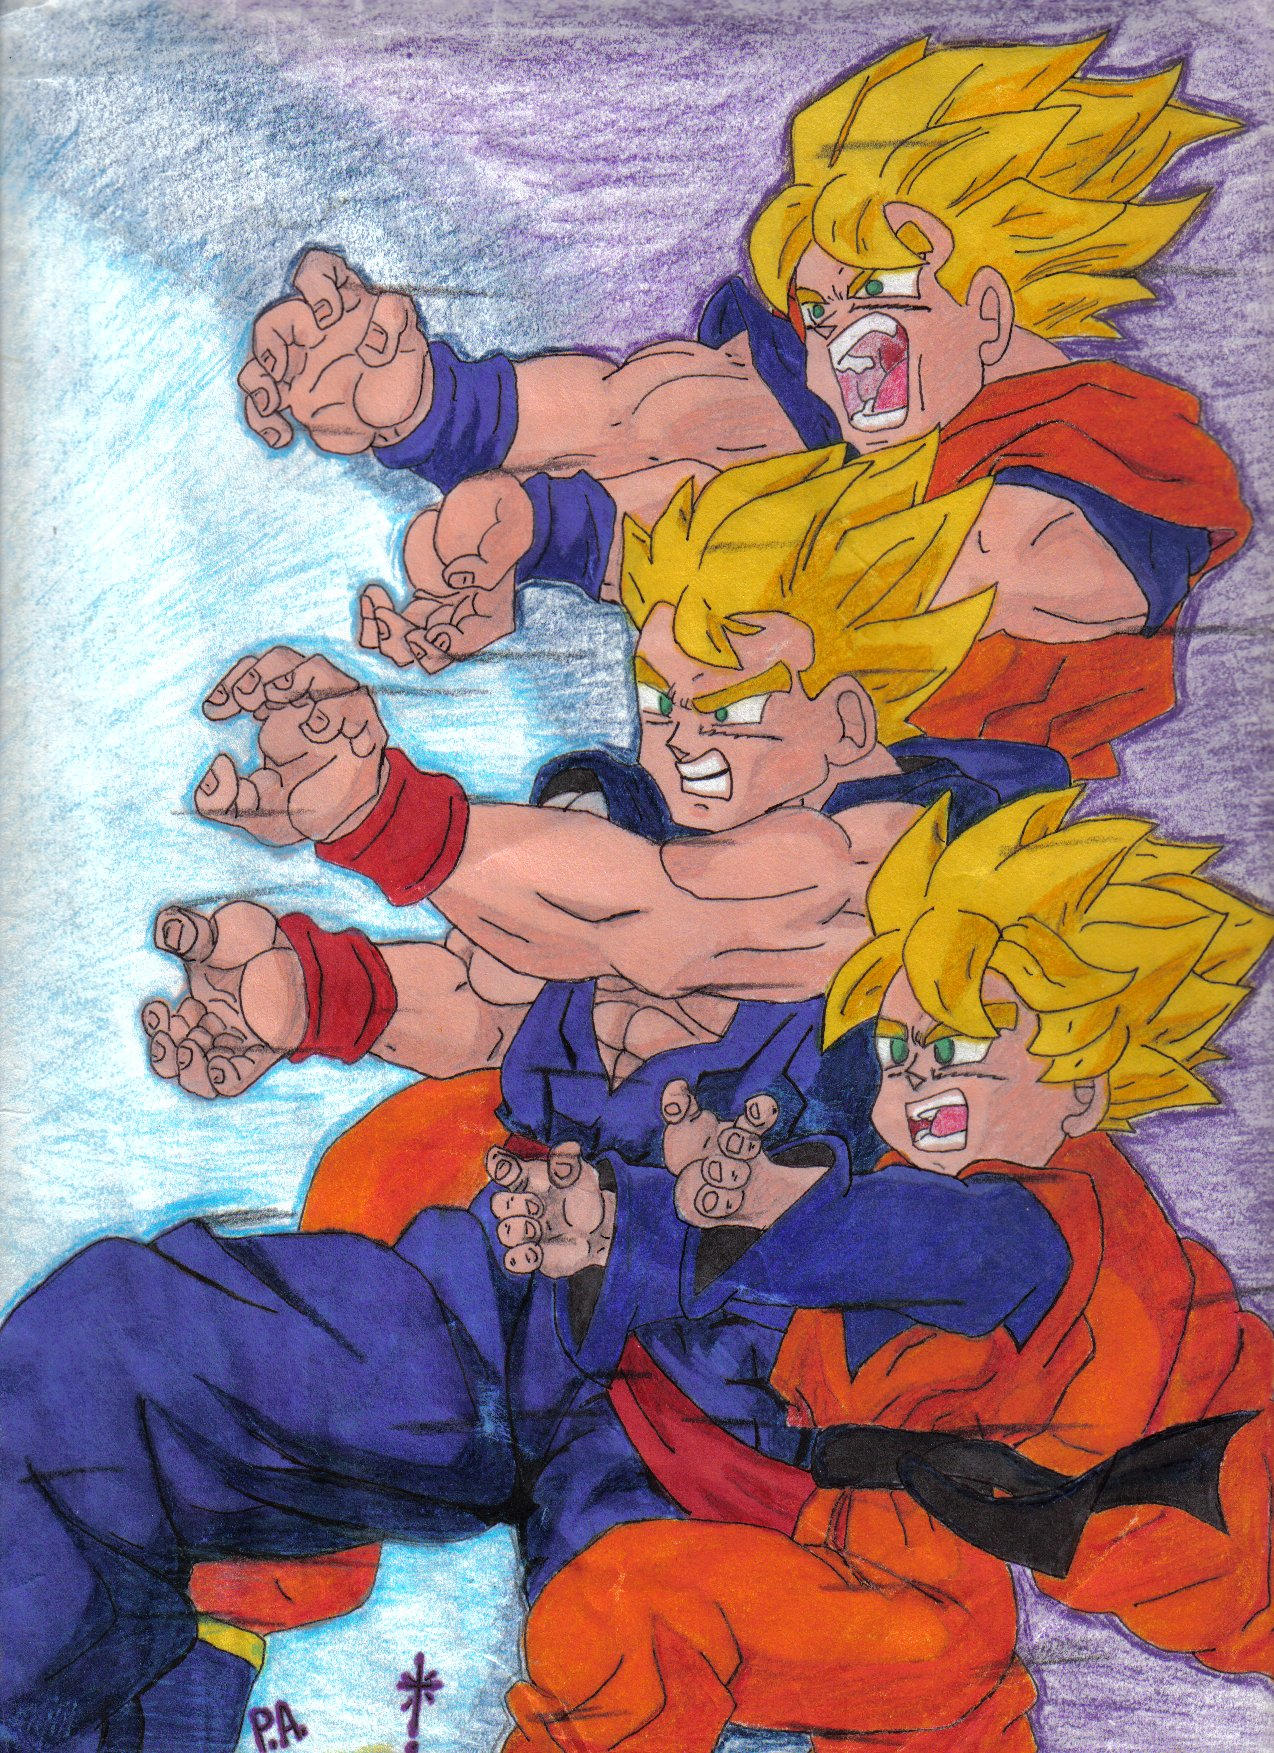 SS1 Goku, Gohan, and Goten by kagamutora on DeviantArt